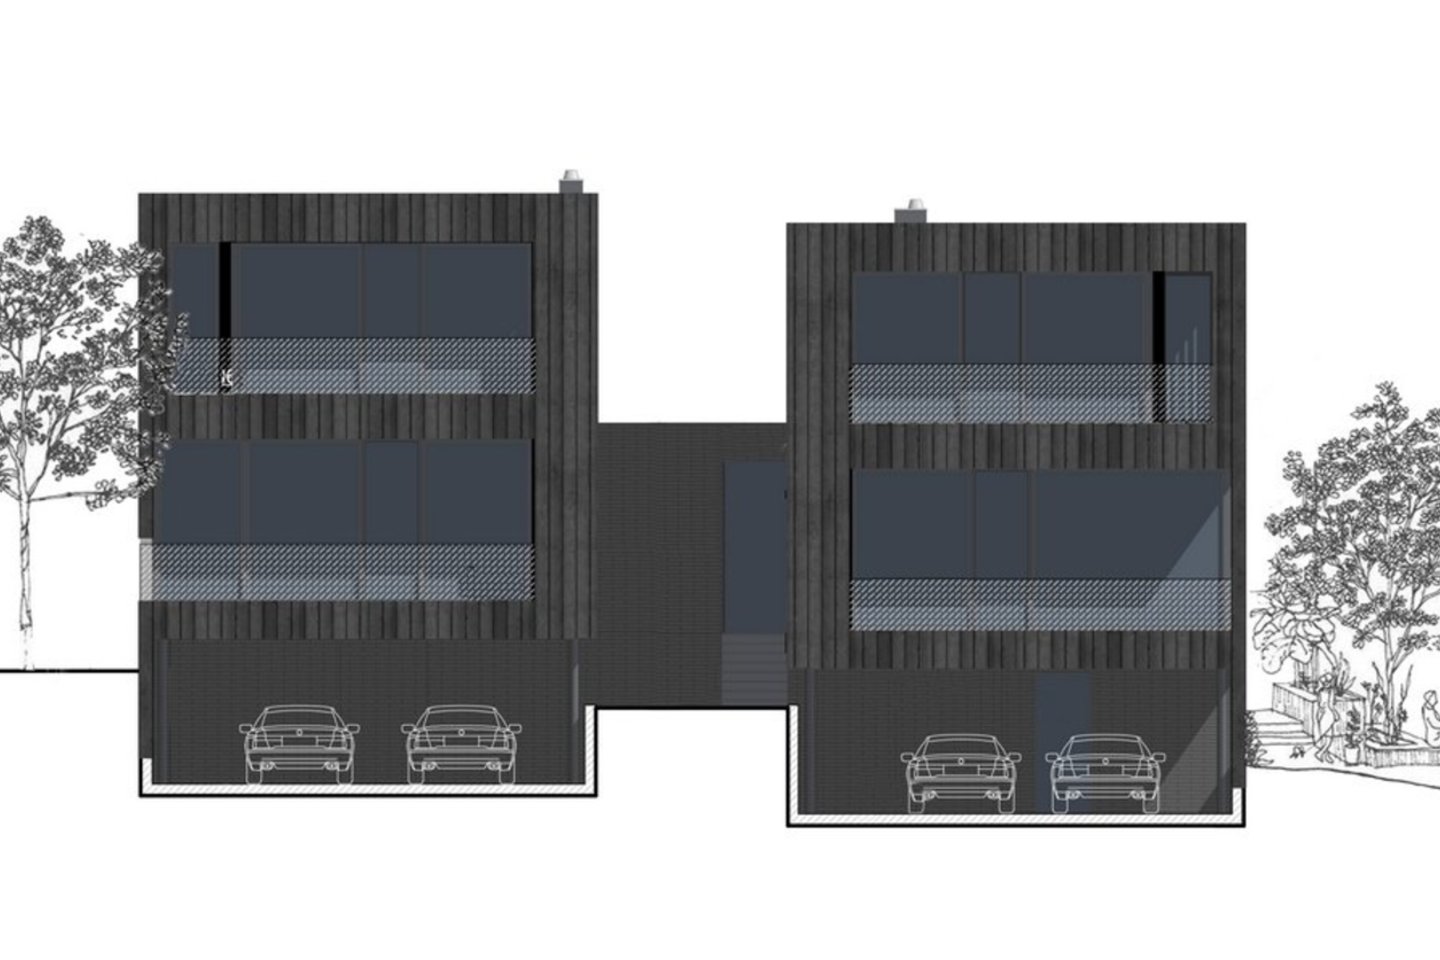 Dvibutis „Black Box“, architektai: Eglė Prunskaitė-Braziulė, Ieva Prunskaitė, Rokas Puzinas (Studija „Prusta“).<br>Architektų nuotr. ir vizual.